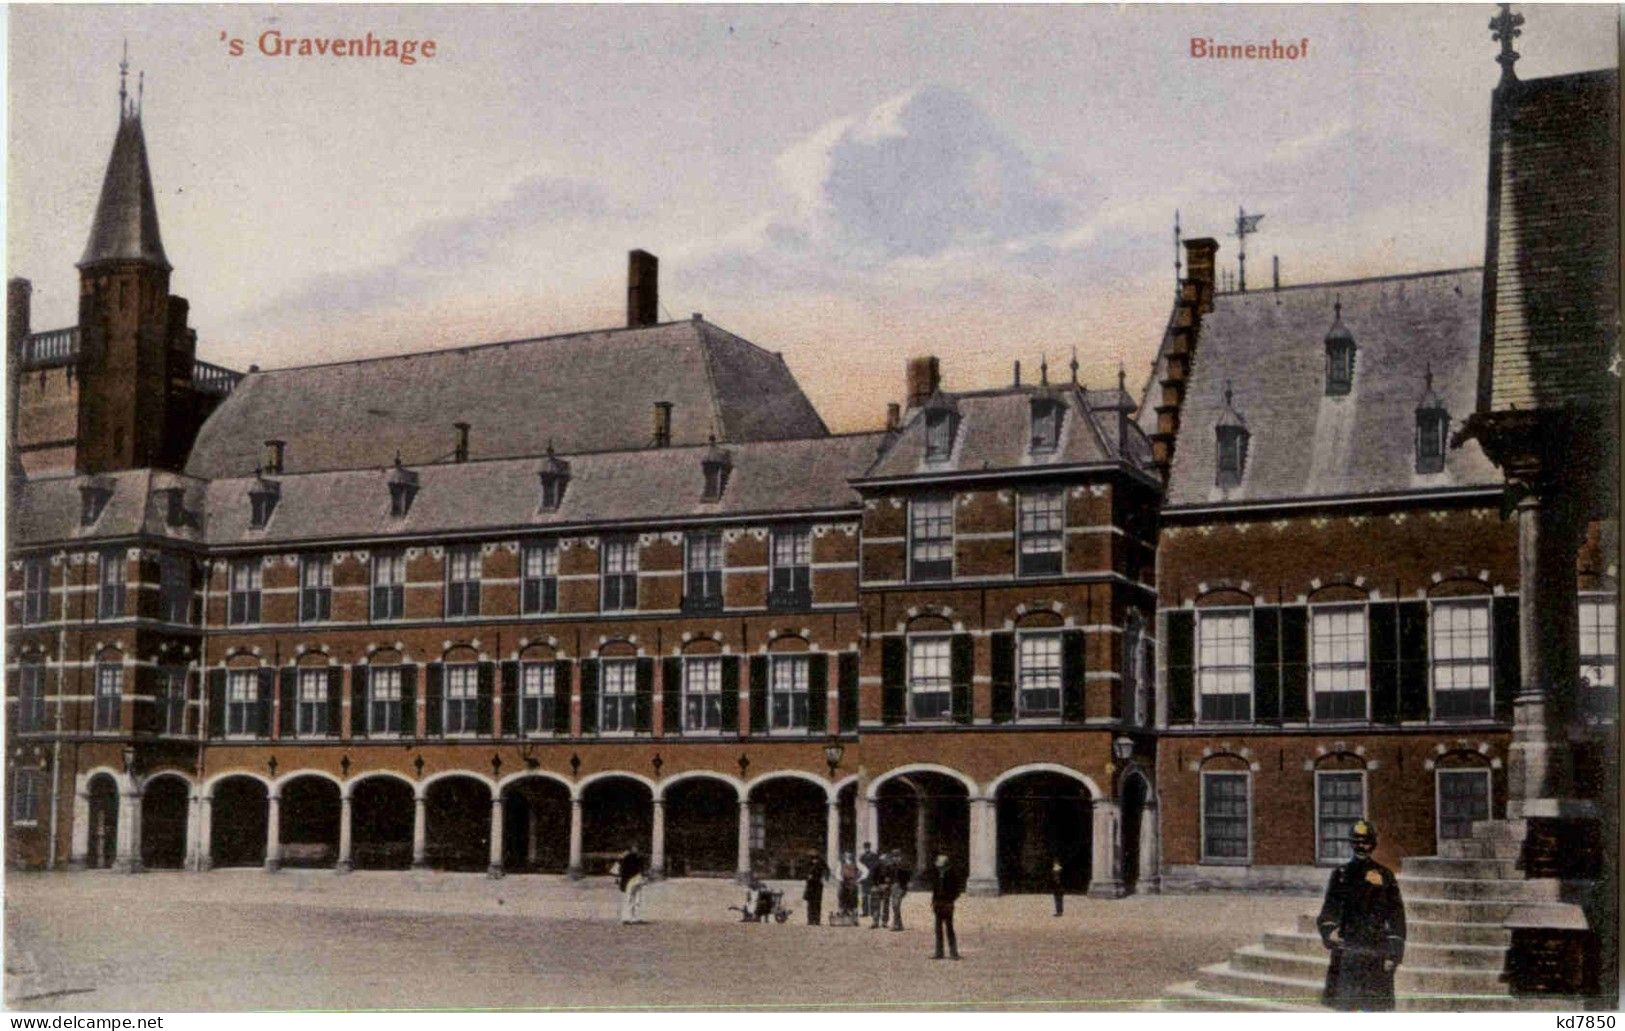 S Gravenhage - Binnenhof - Den Haag ('s-Gravenhage)